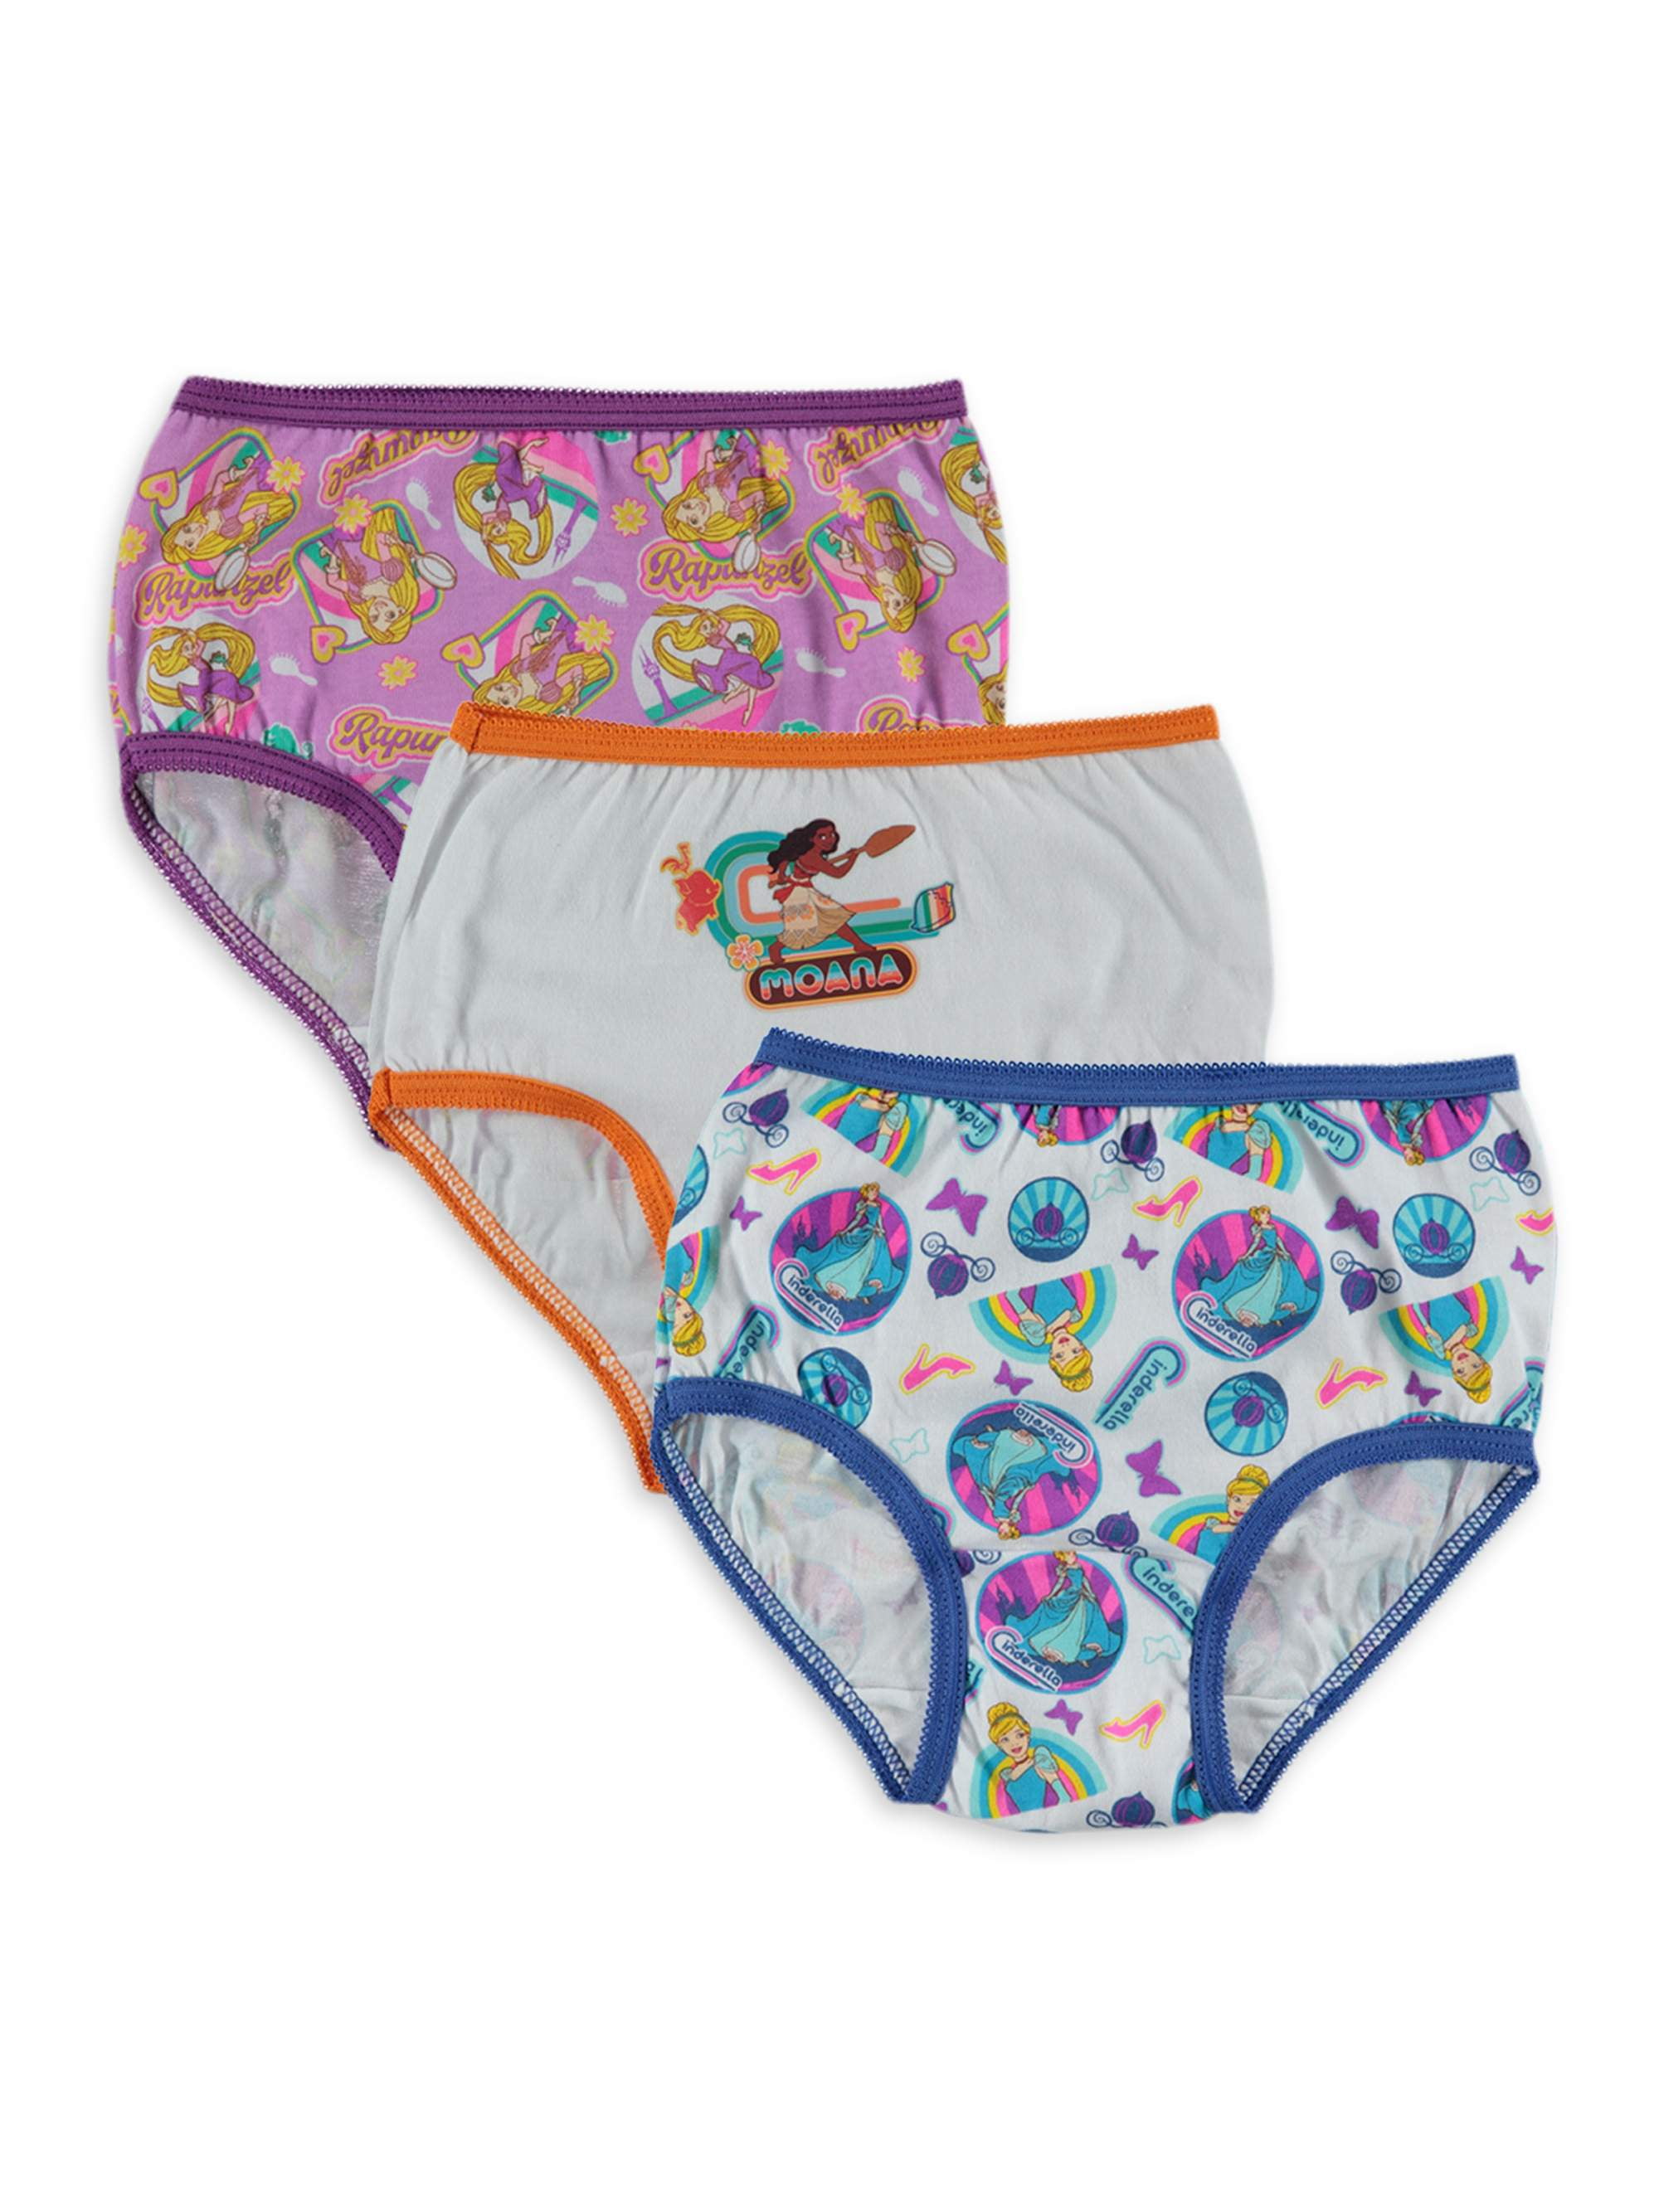 Disney Tsum 7 Pack Toddler Girls Underwear